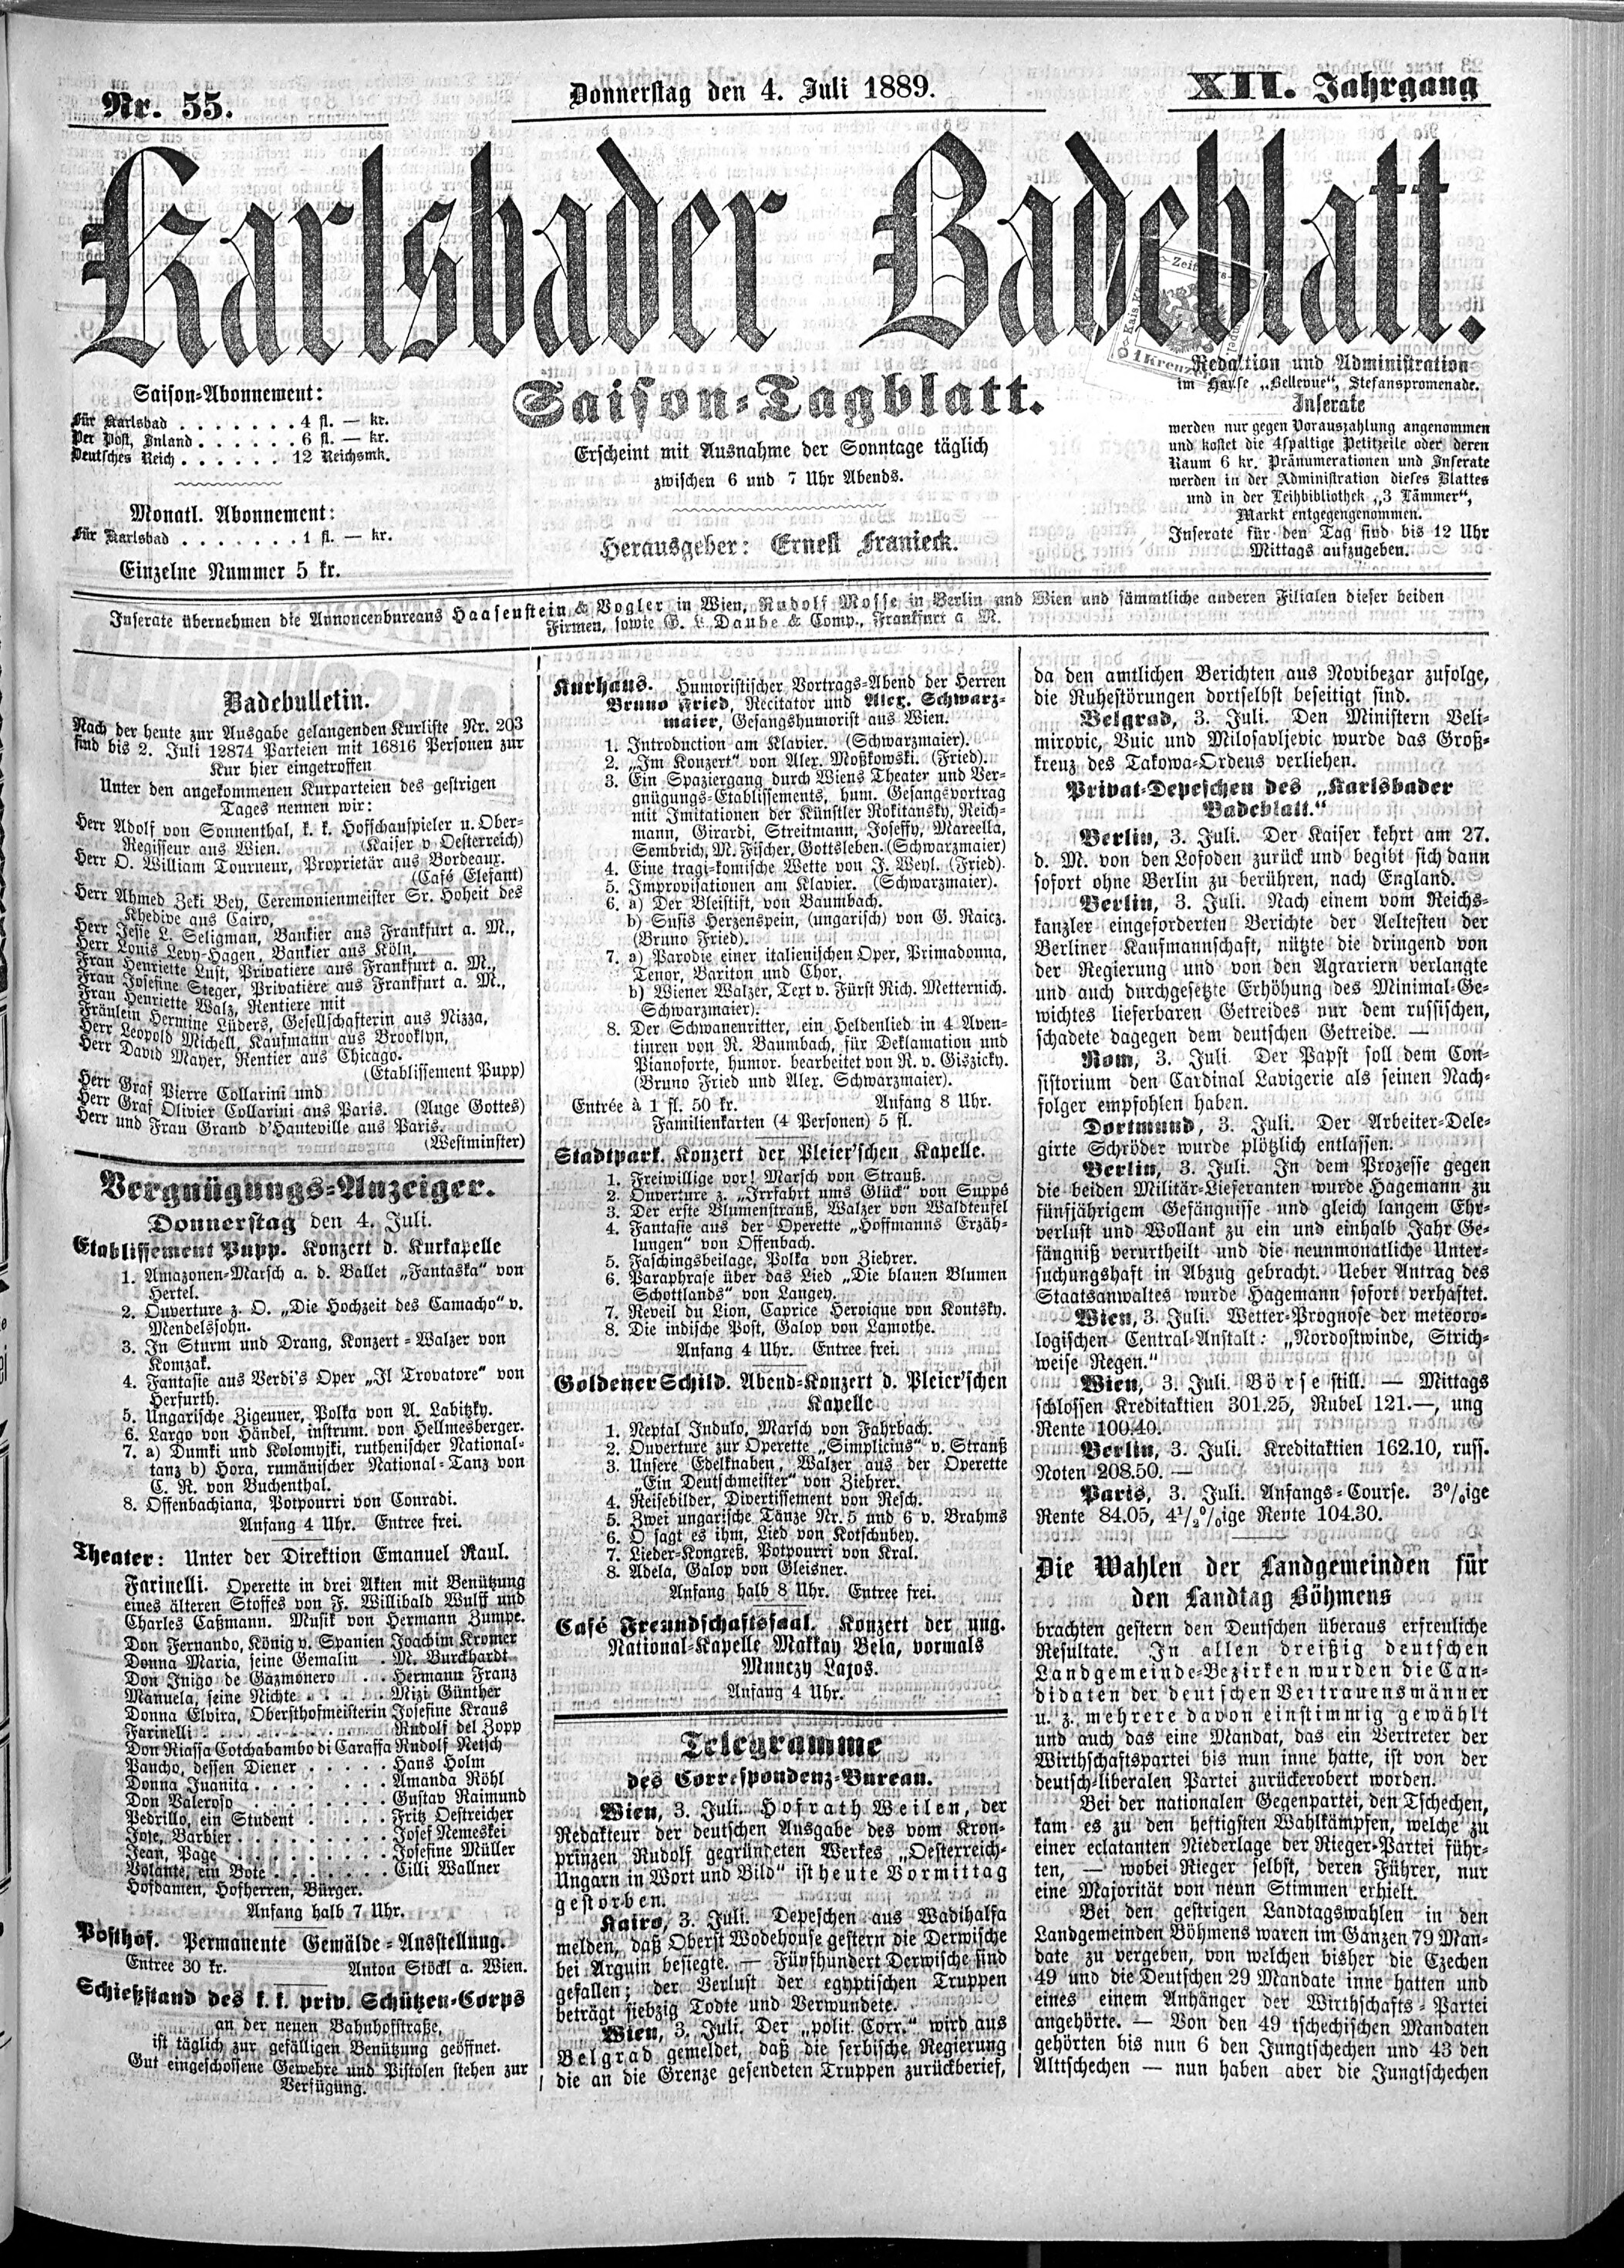 1. karlsbader-badeblatt-1889-07-04-n55_1565